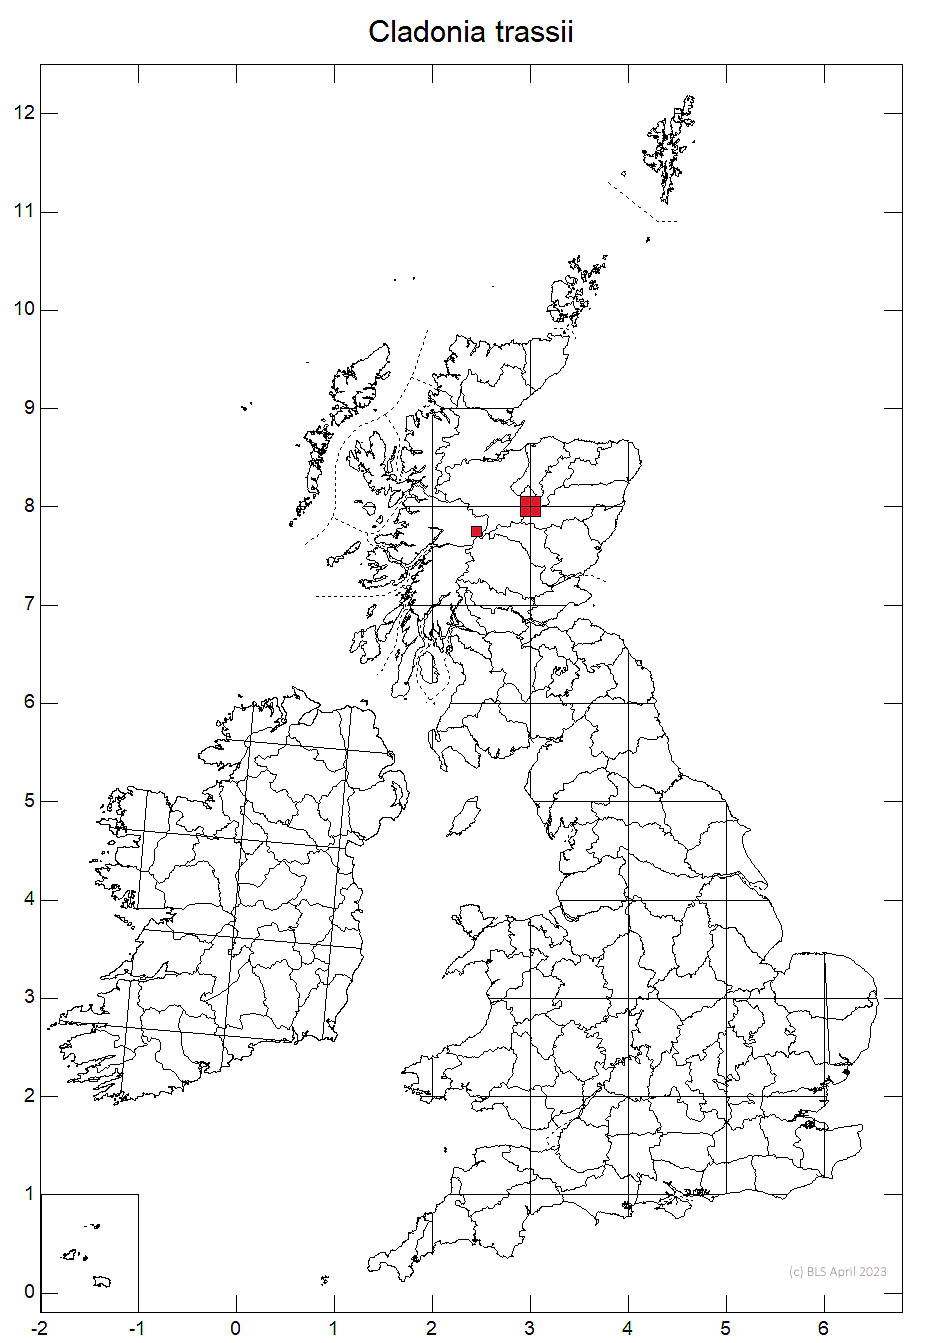 Cladonia trassii 10km sq distribution map